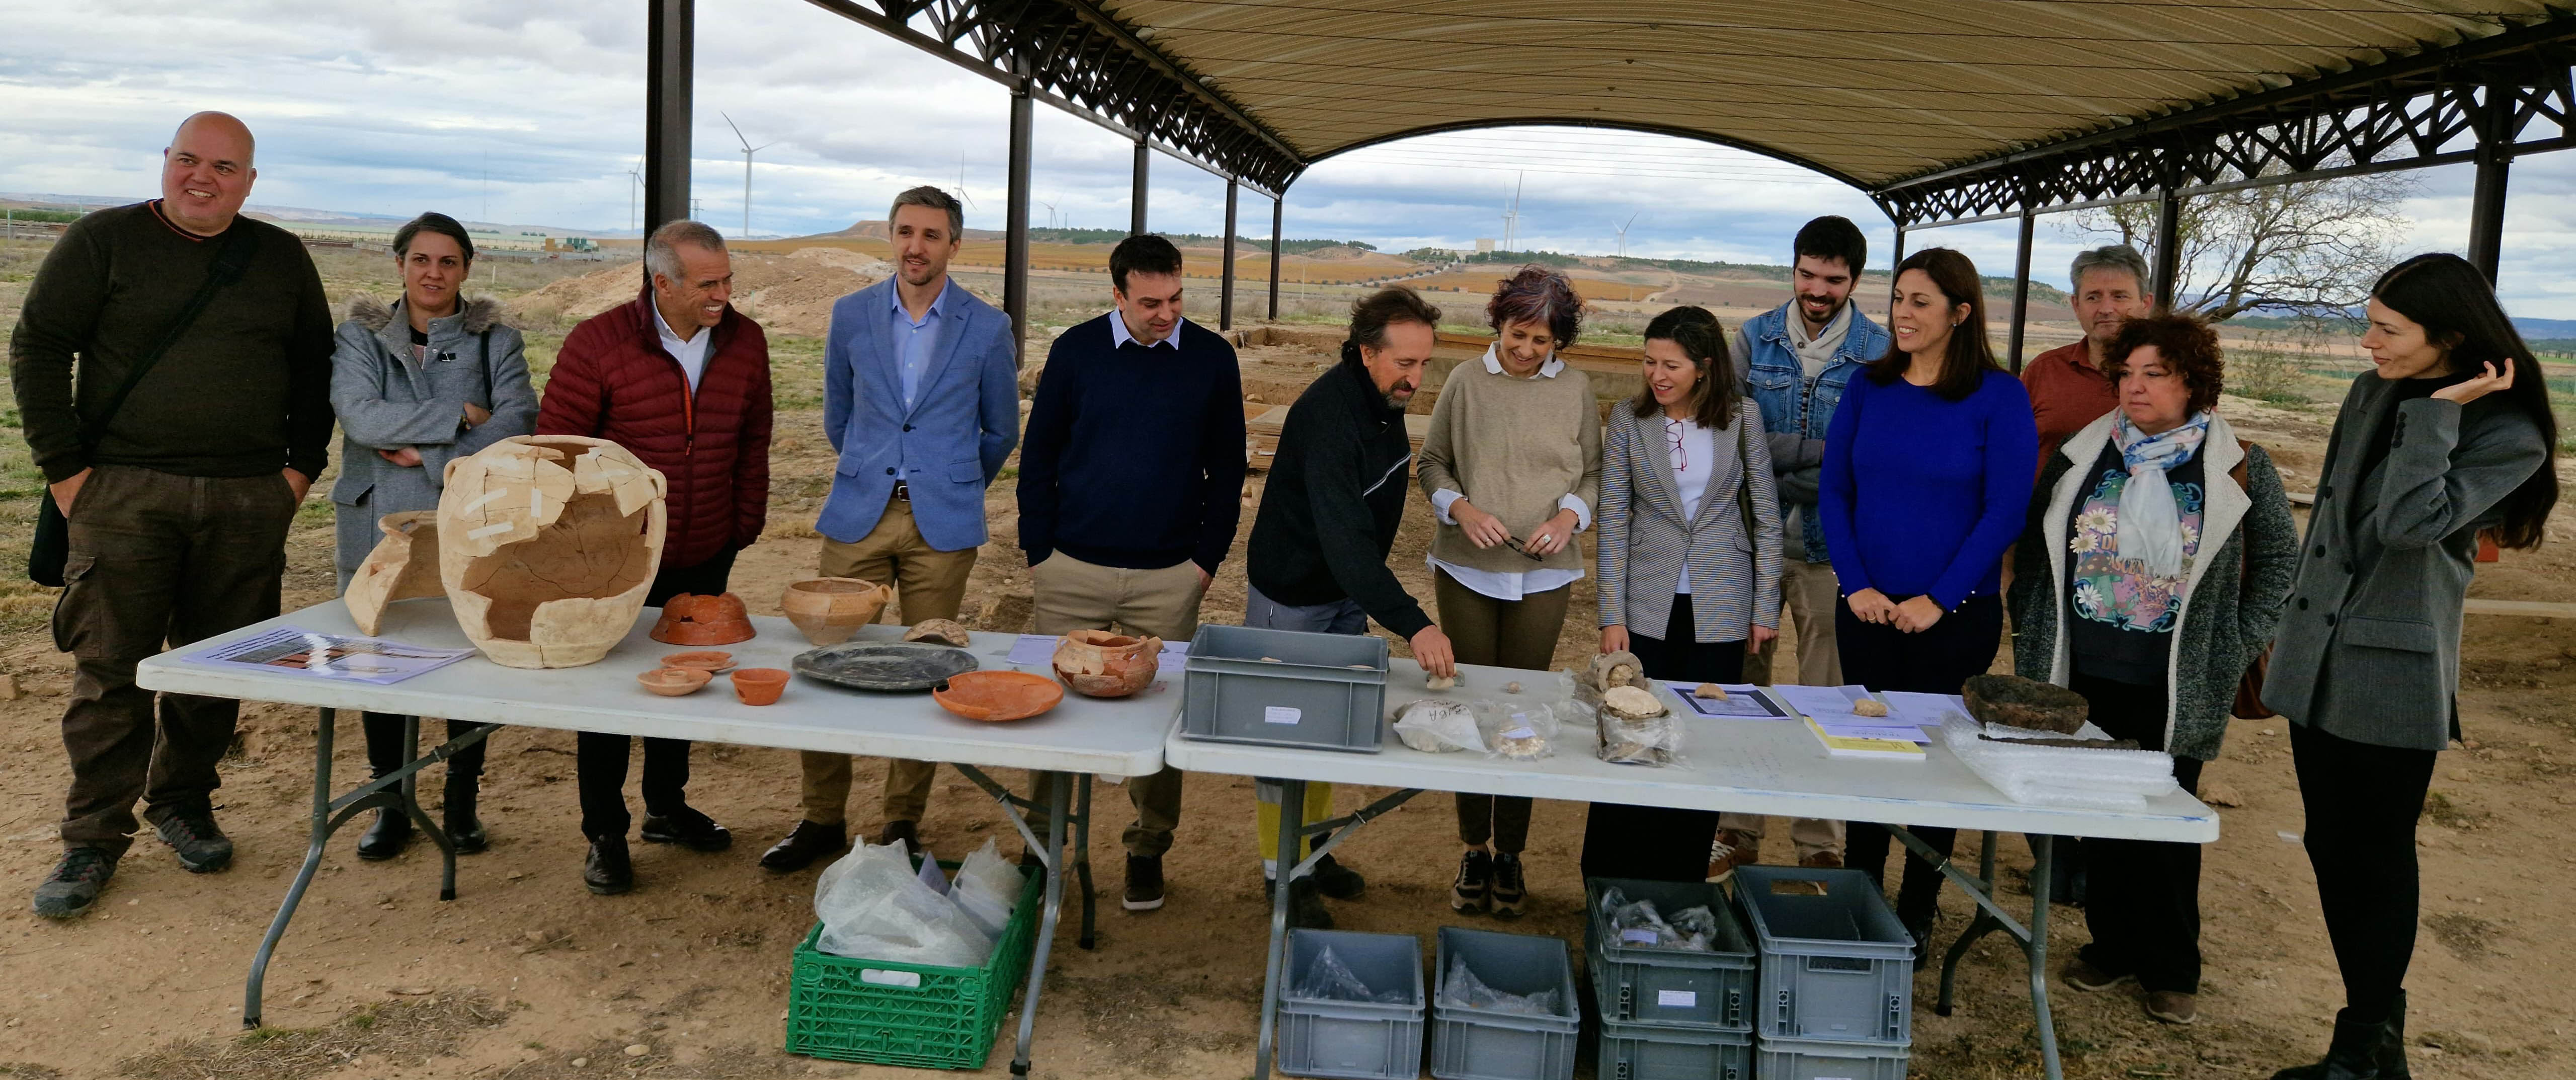 Avanza a buen ritmo el Plan de Sostenibilidad Turística en Destino “Ribera de Navarra”